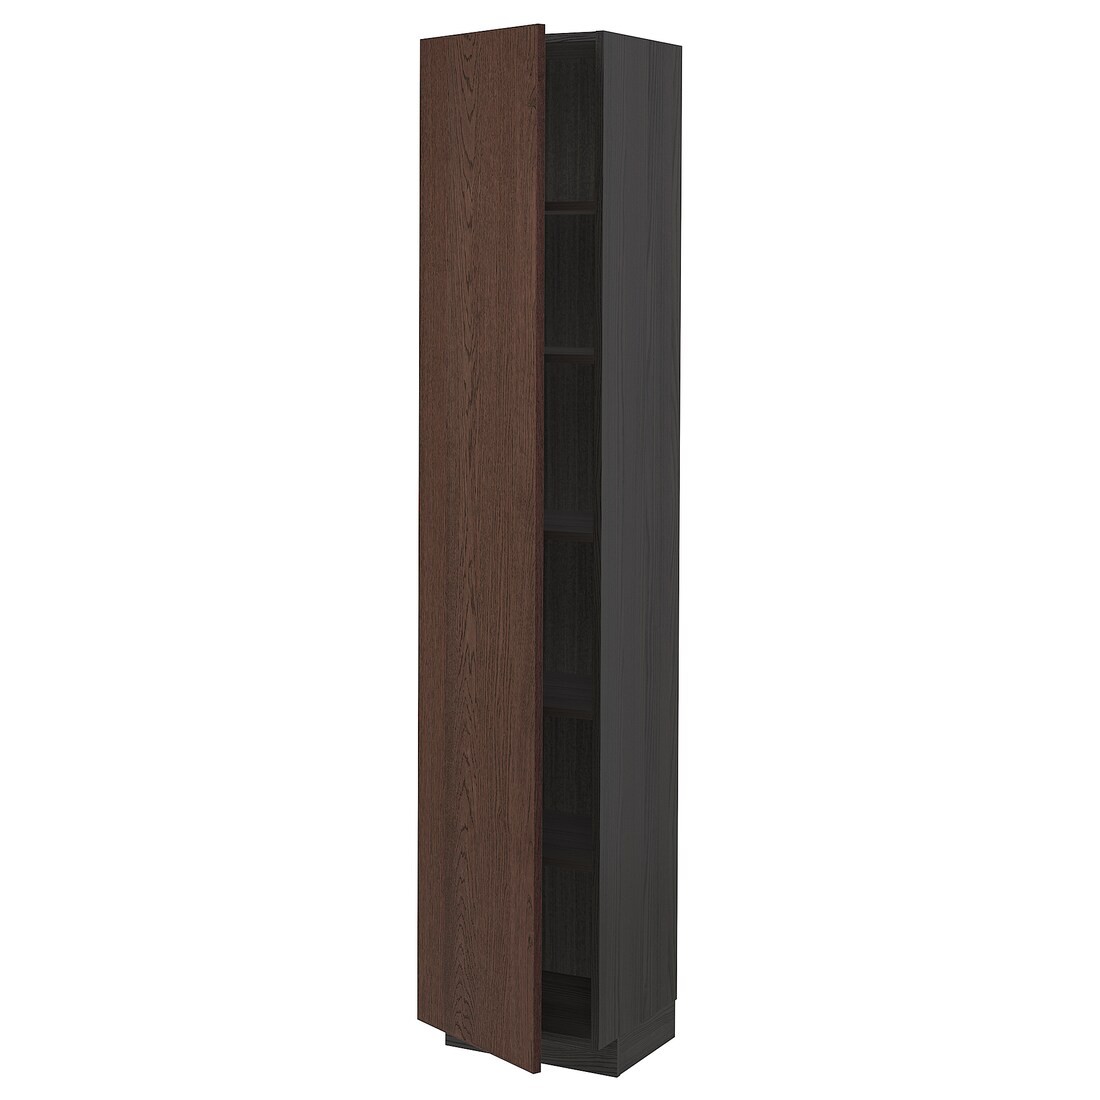 METOD МЕТОД Высокий шкаф с полками, черный / Sinarp коричневый, 40x37x200 см